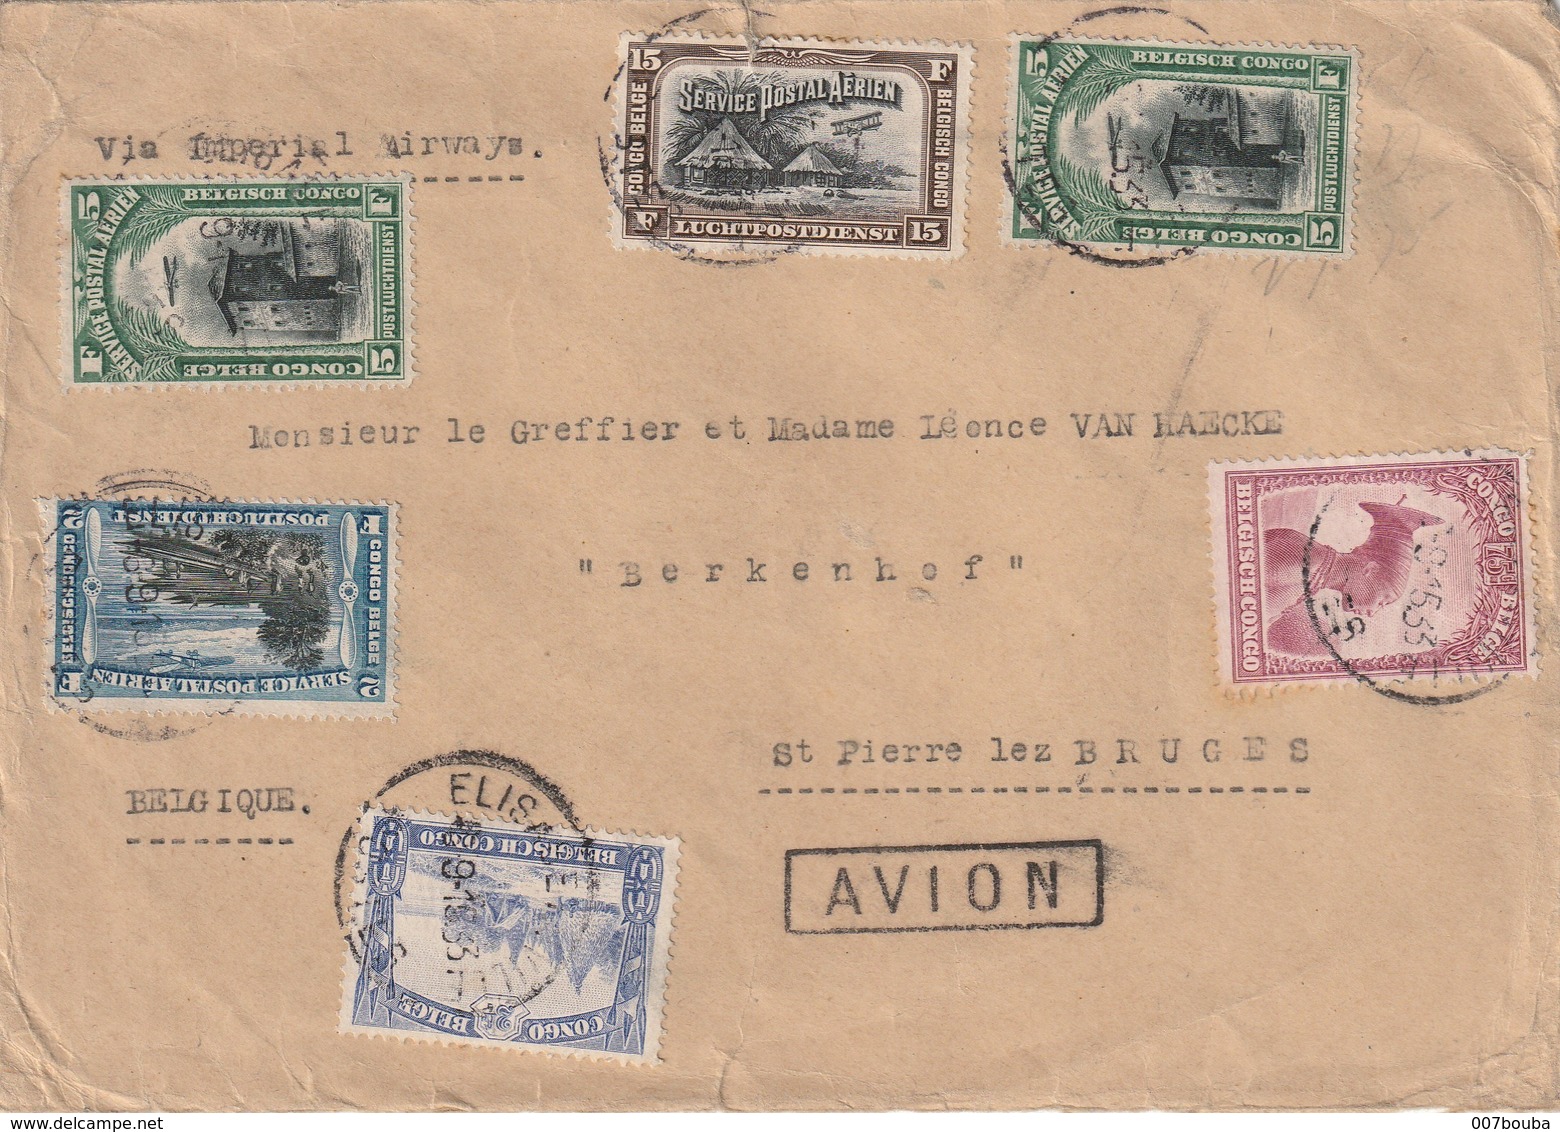 Congo Belge - Lettre Avec TP 175/ 178/ PA3/ PA4/ PA5 D'Elisabethville Vers St Pierre Lez Bruges 1933 - Lettres & Documents